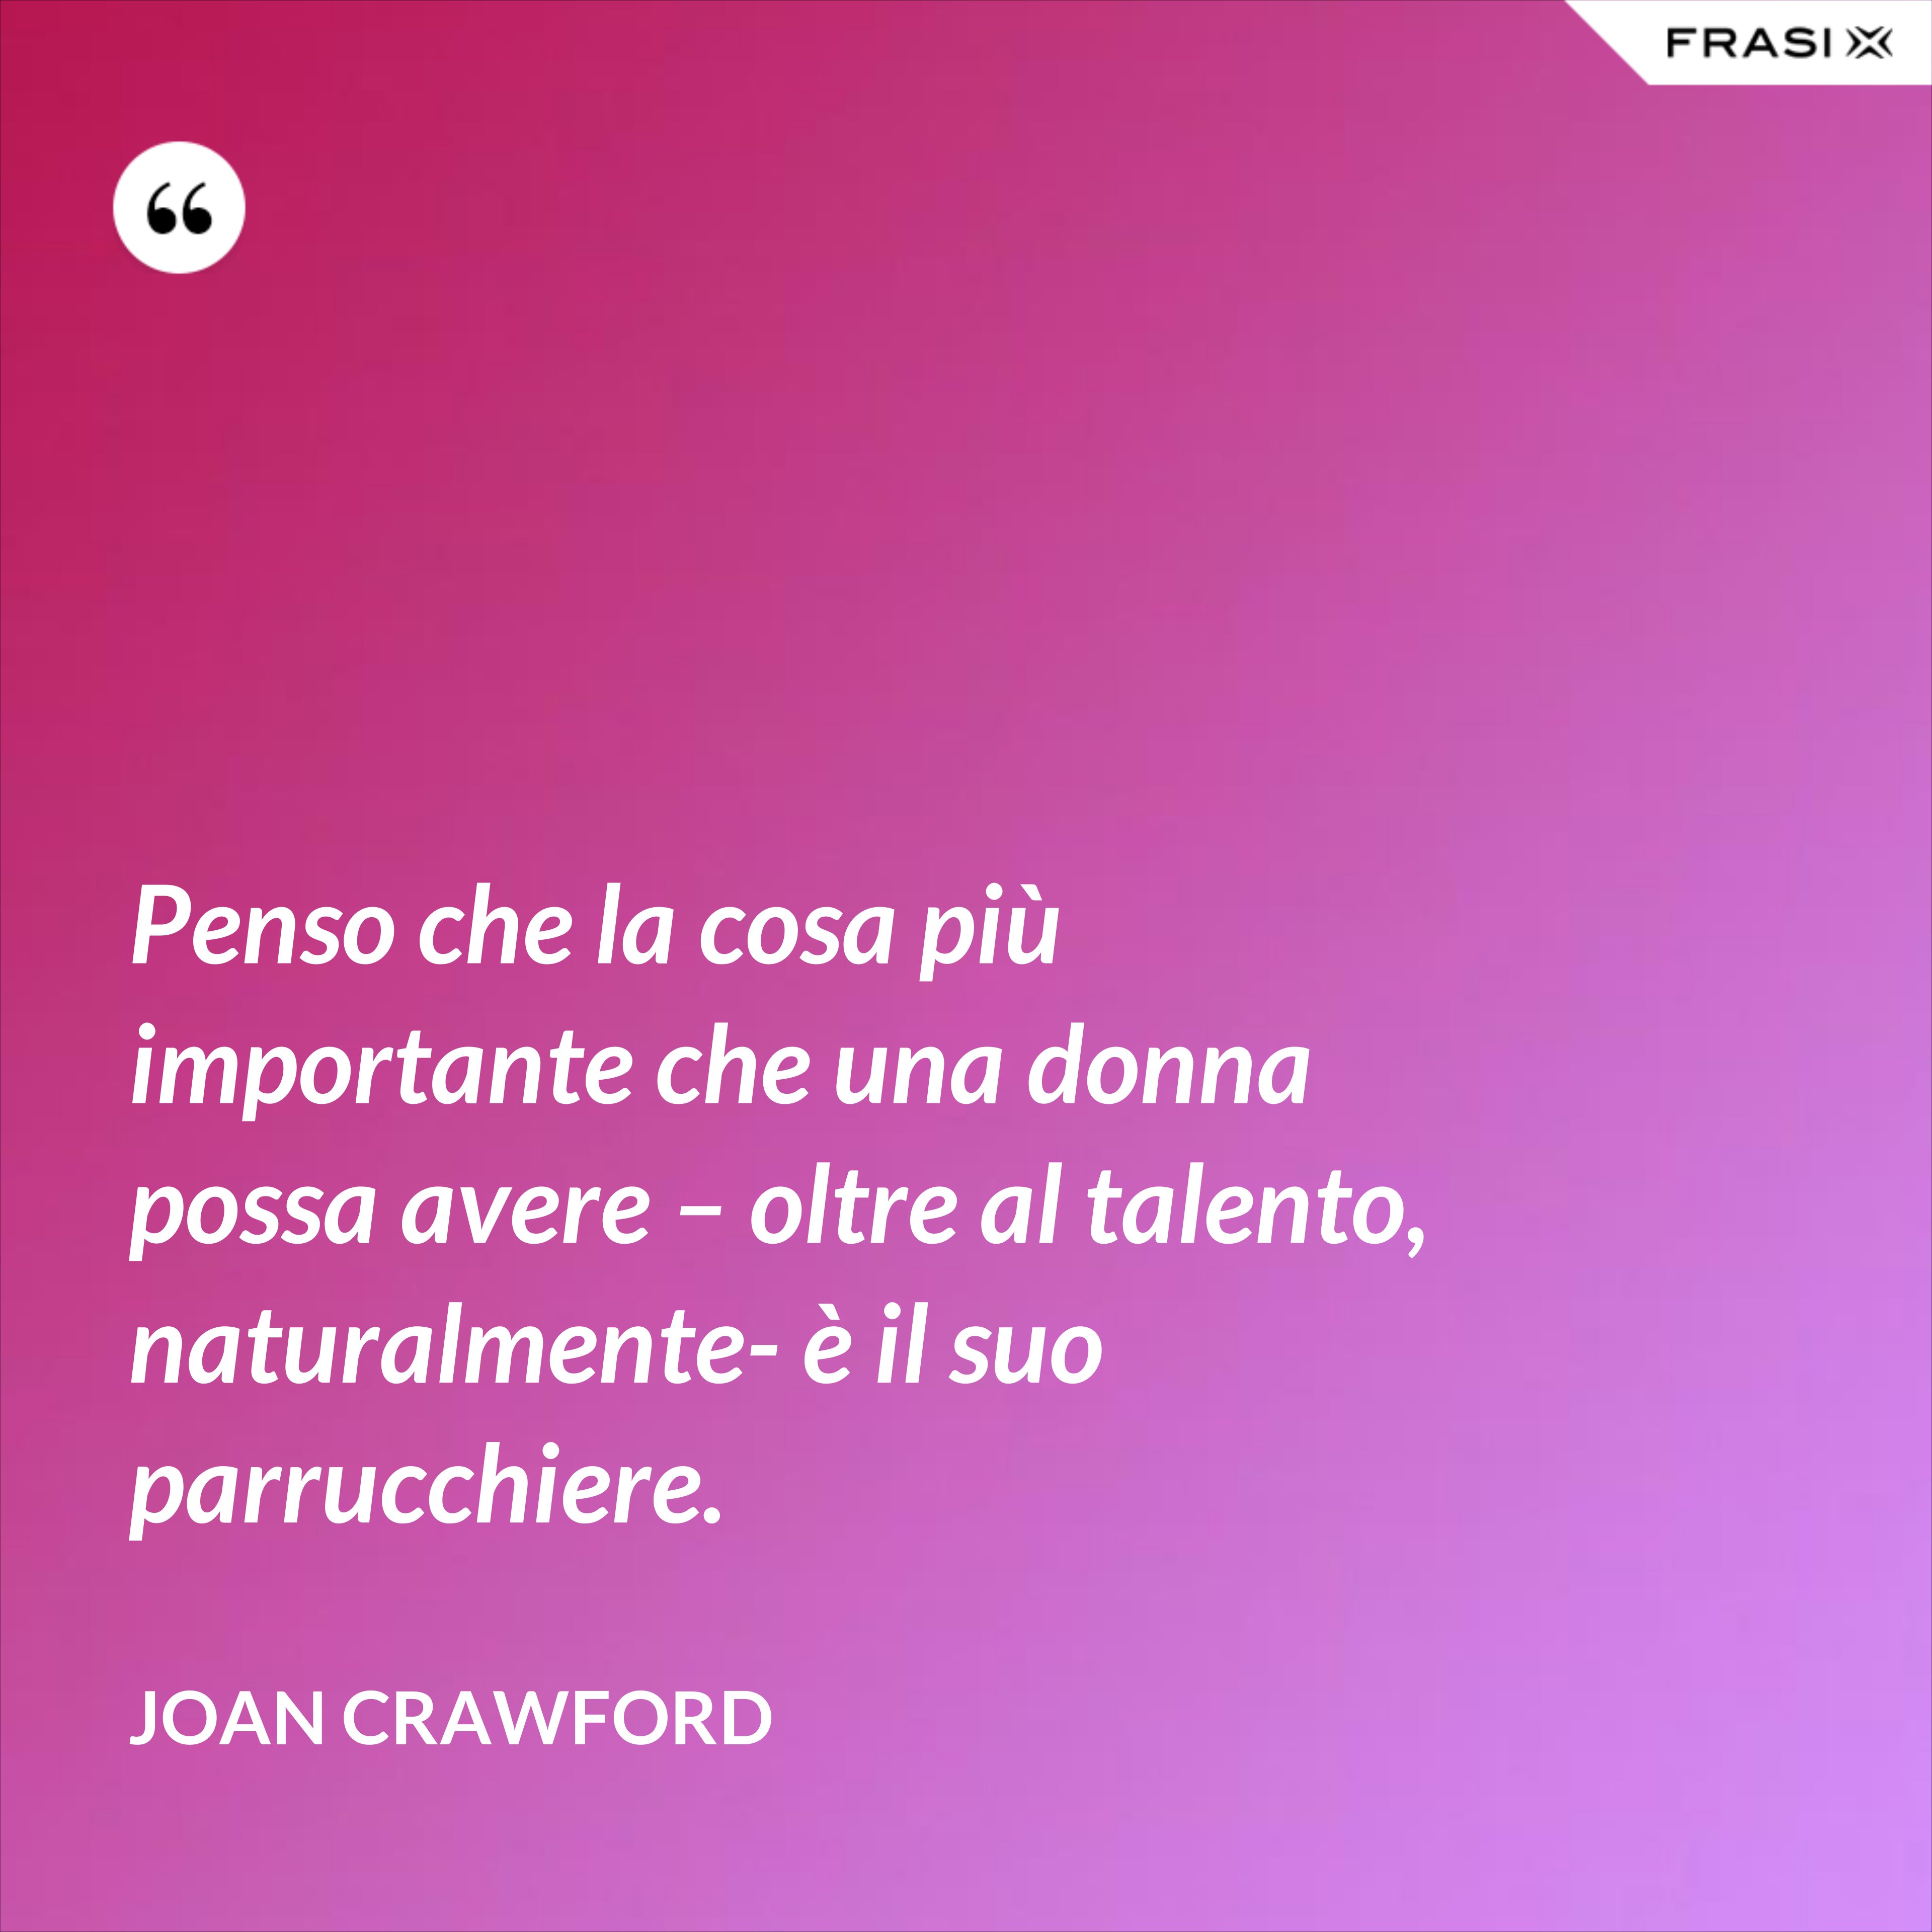 Penso che la cosa più importante che una donna possa avere – oltre al talento, naturalmente- è il suo parrucchiere. - Joan Crawford